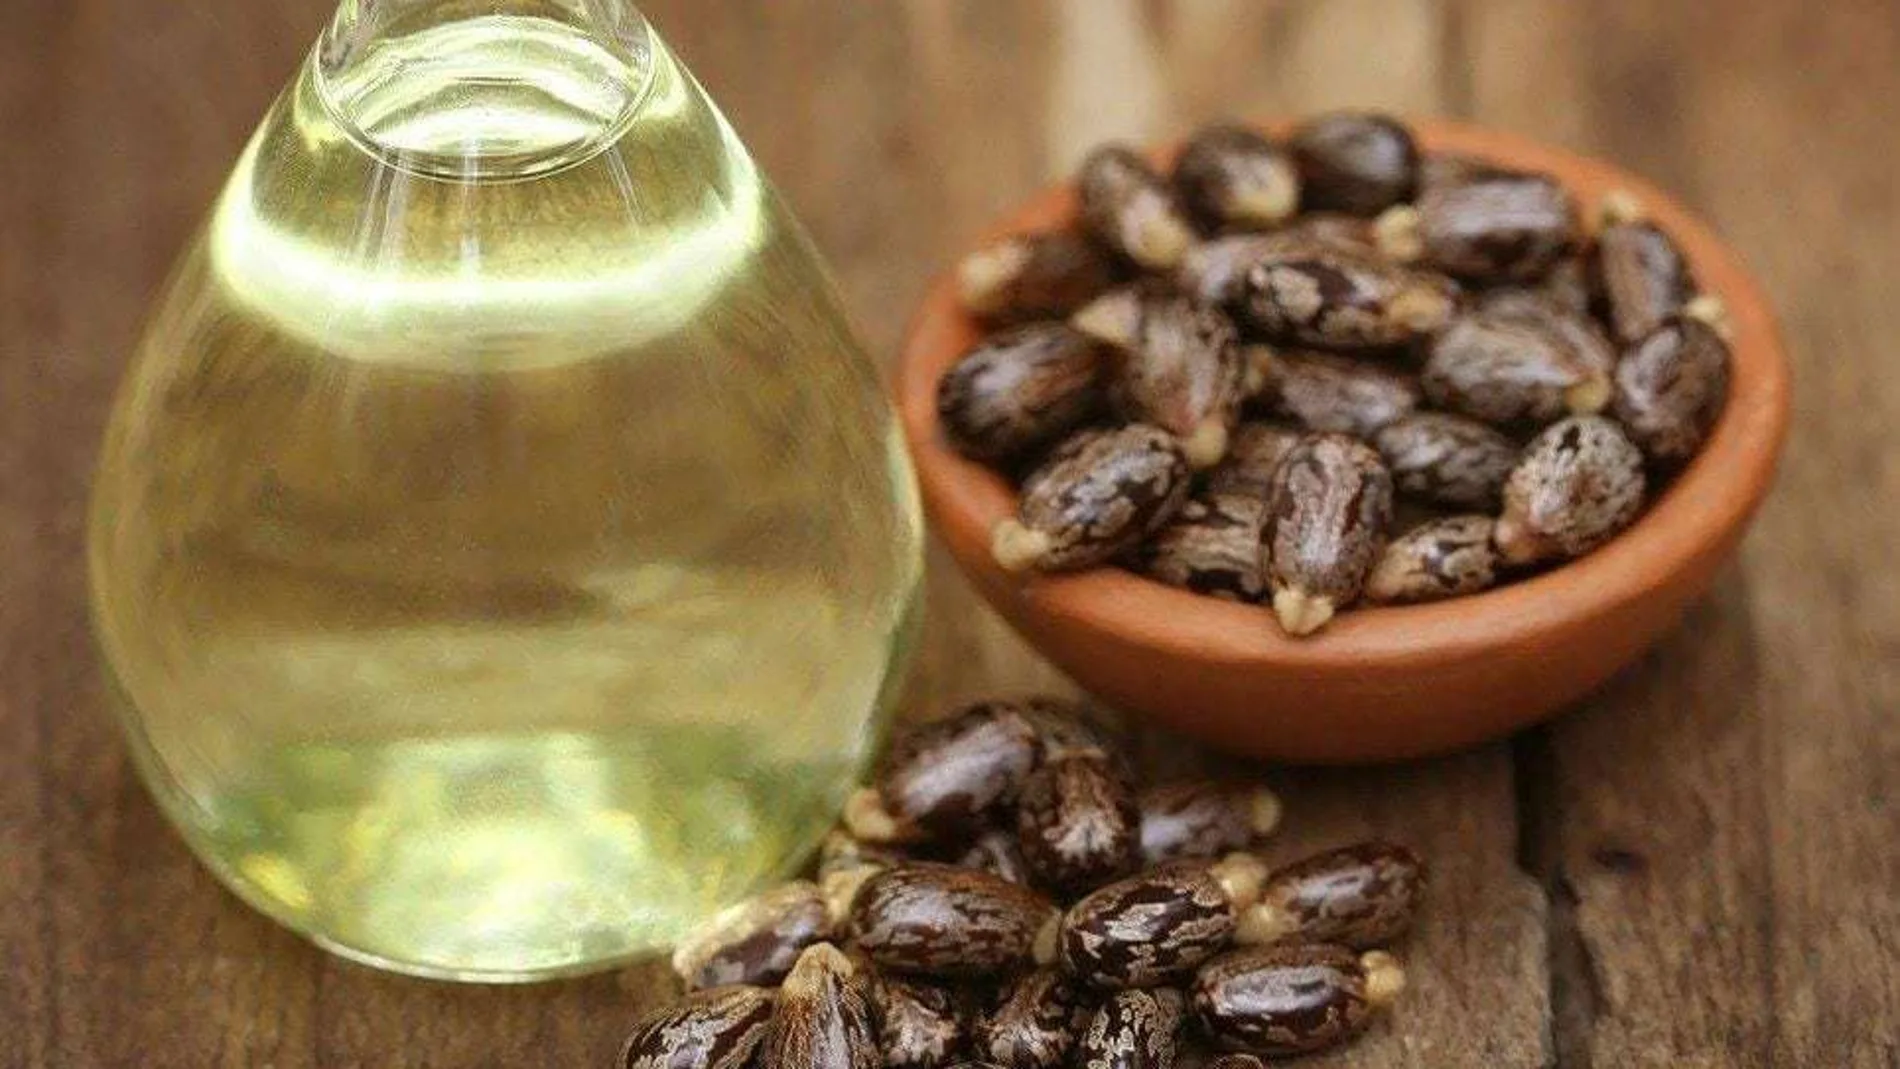 El Riccinos comunis es la planta de donde se extrae el aceite de ricino, pero también de donde se puede obtener uno de los venenos más letales del mundo: el ricino